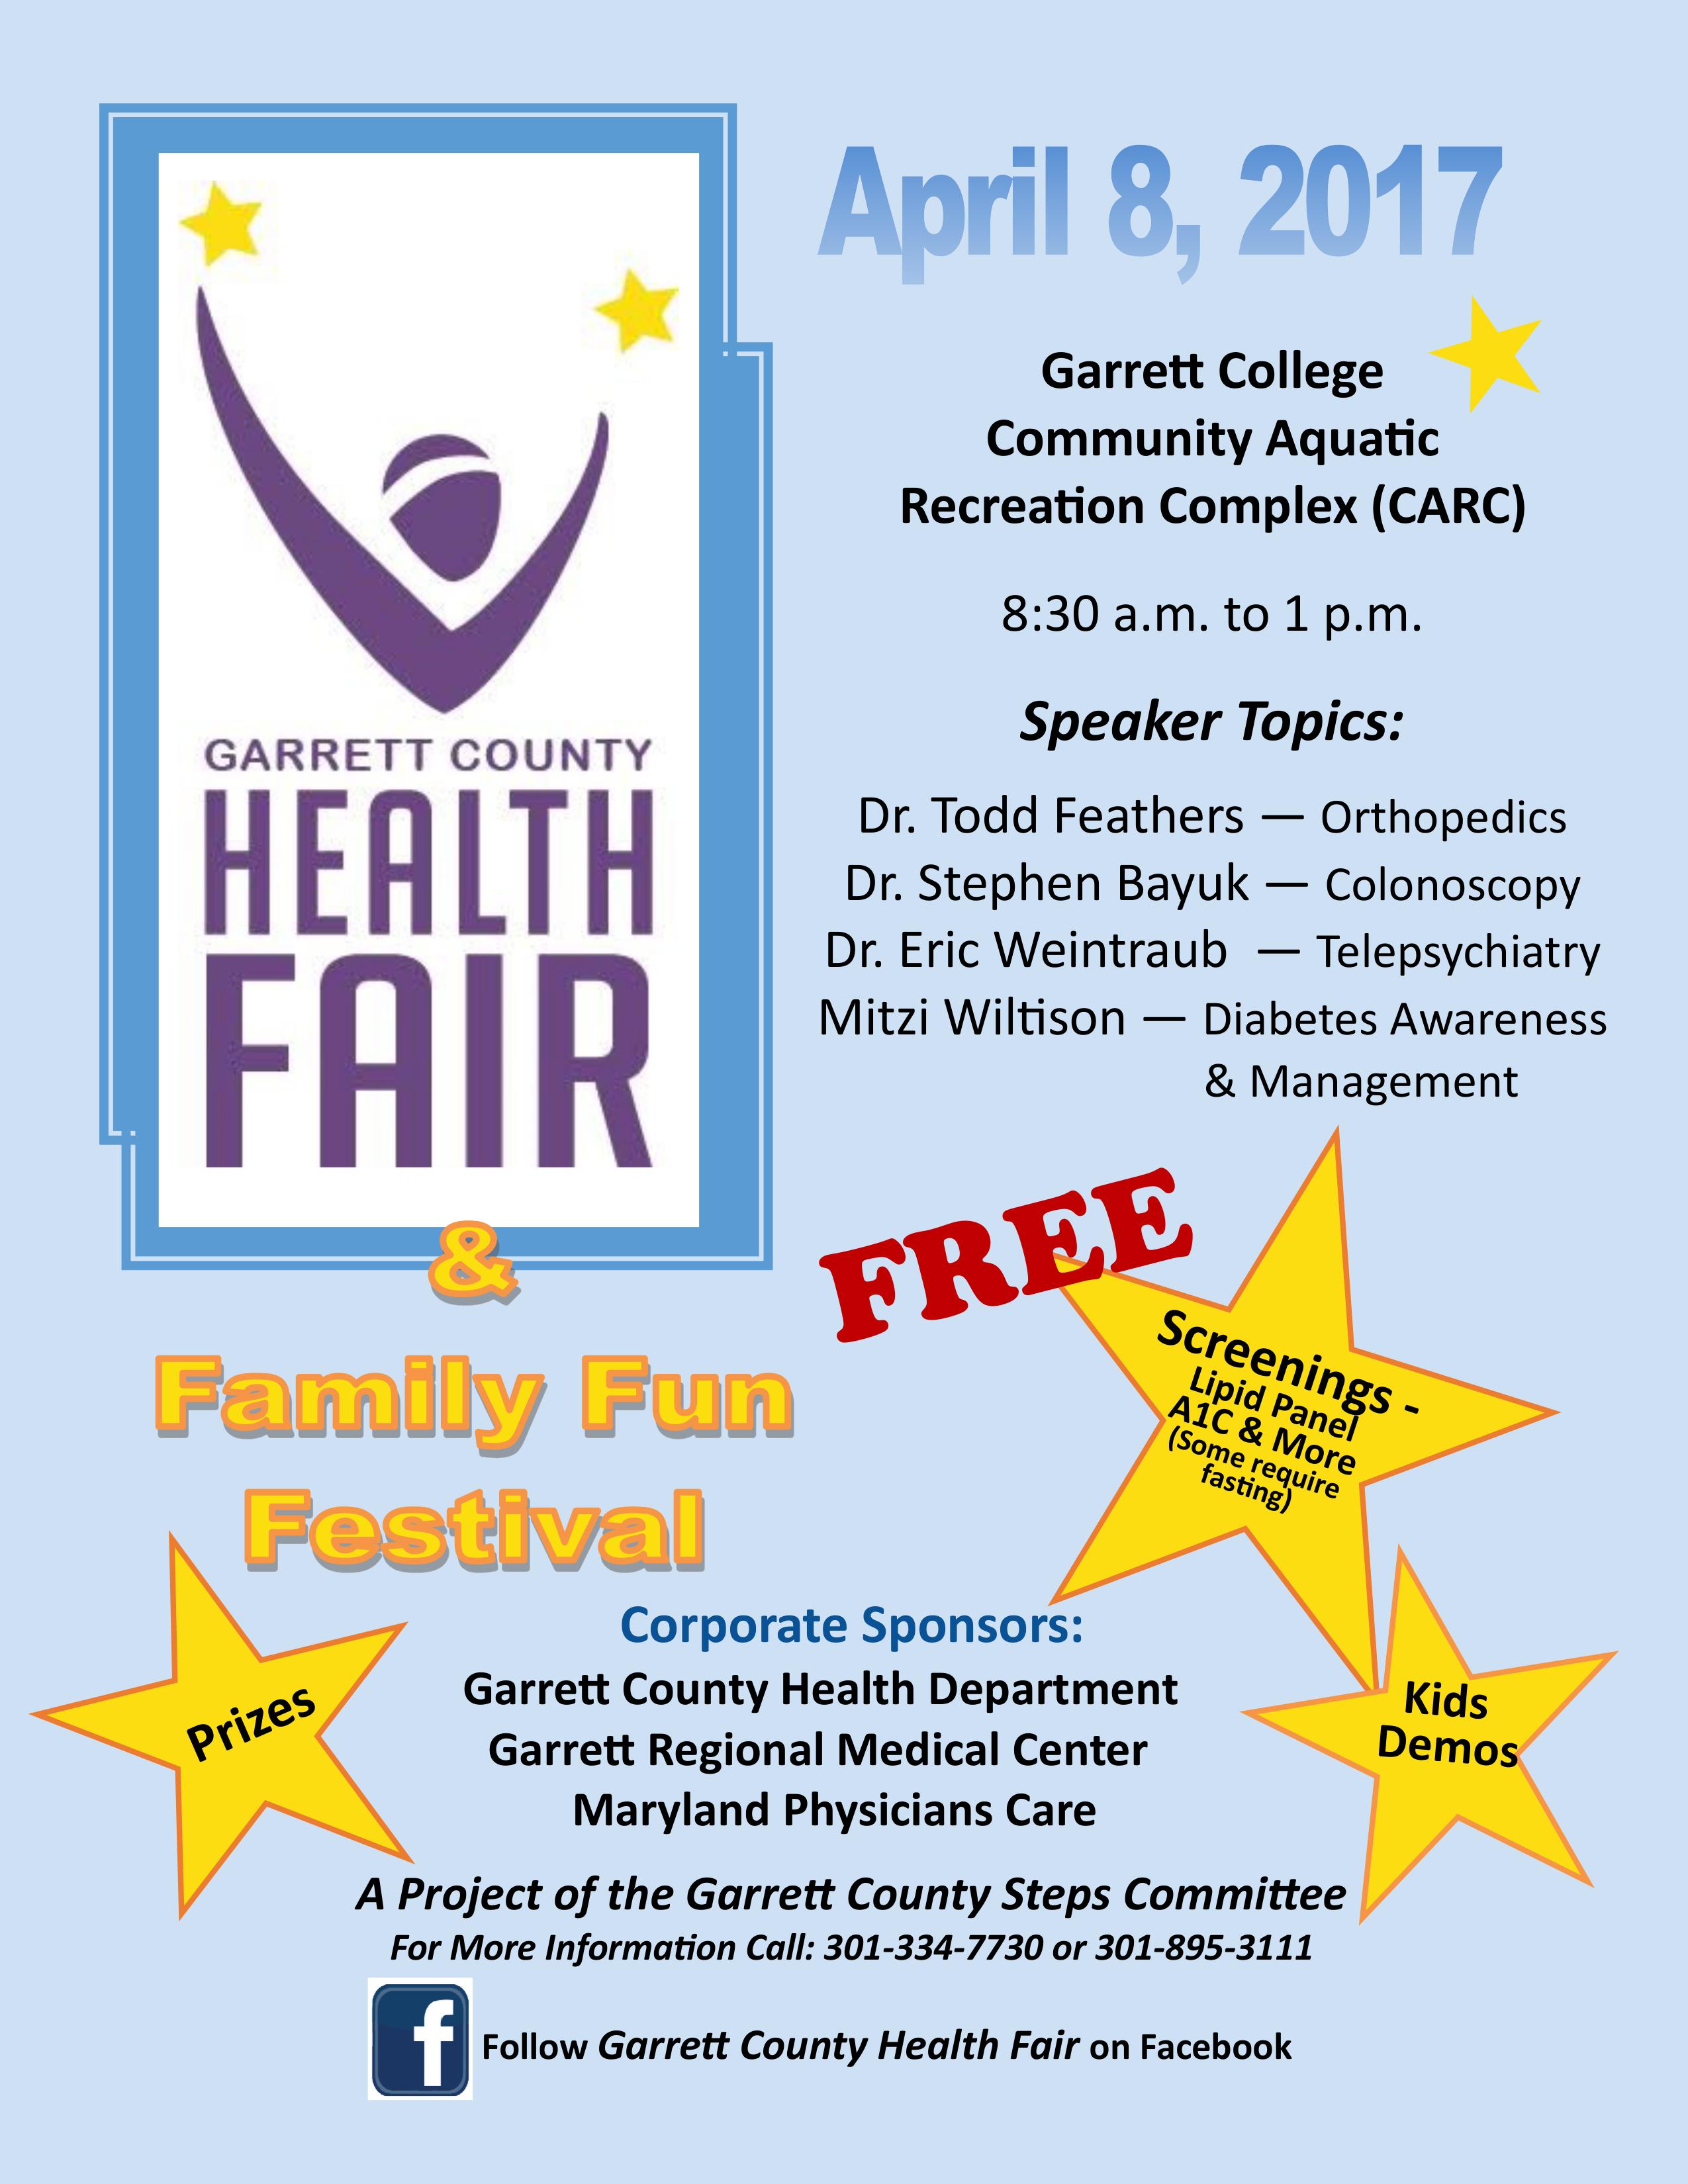 Garrett County Health Fair